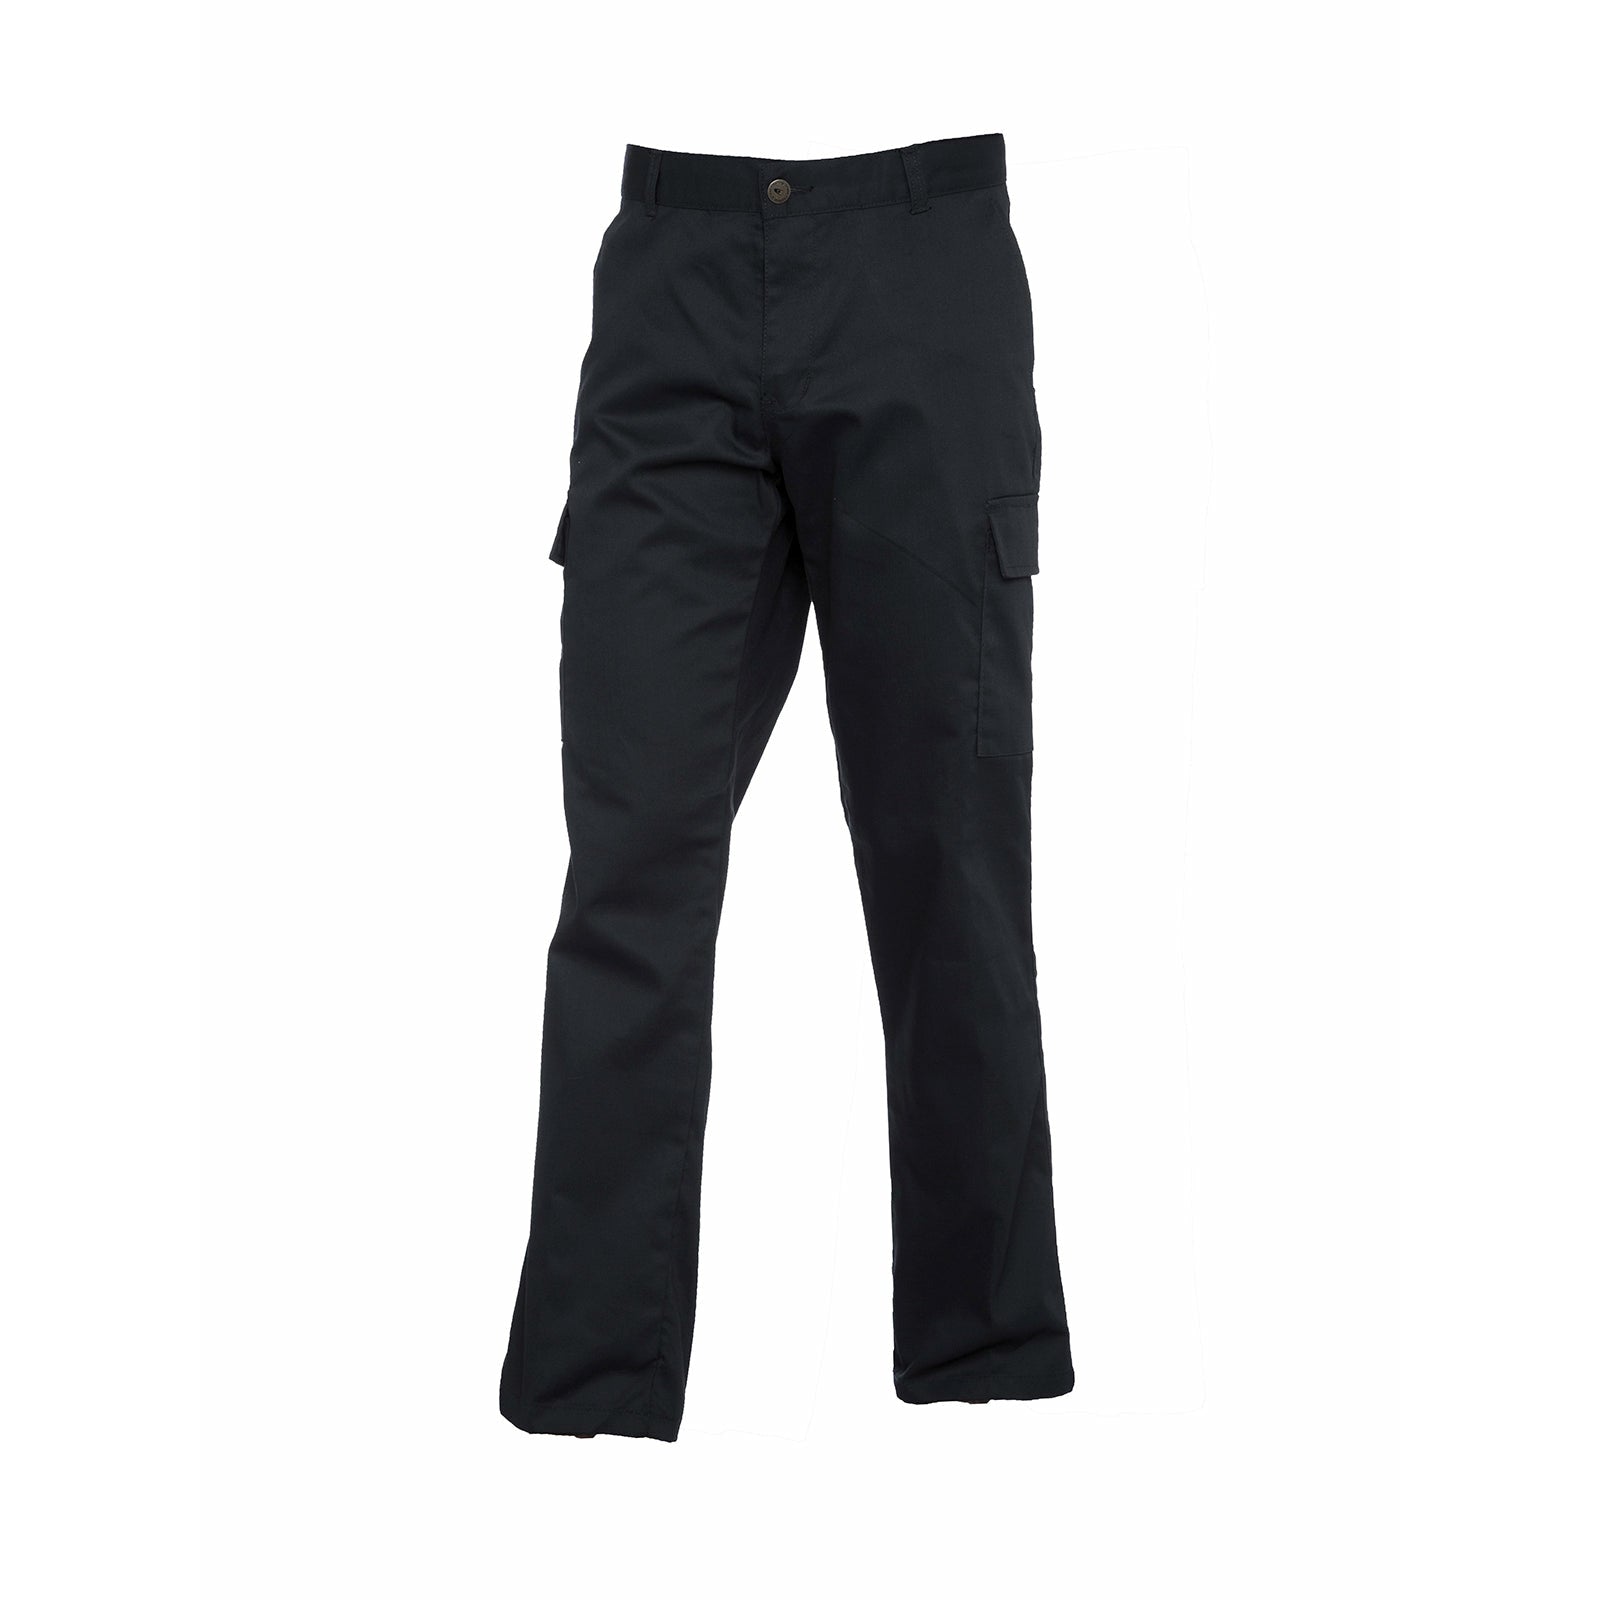 Ladies cargo trouser - Black